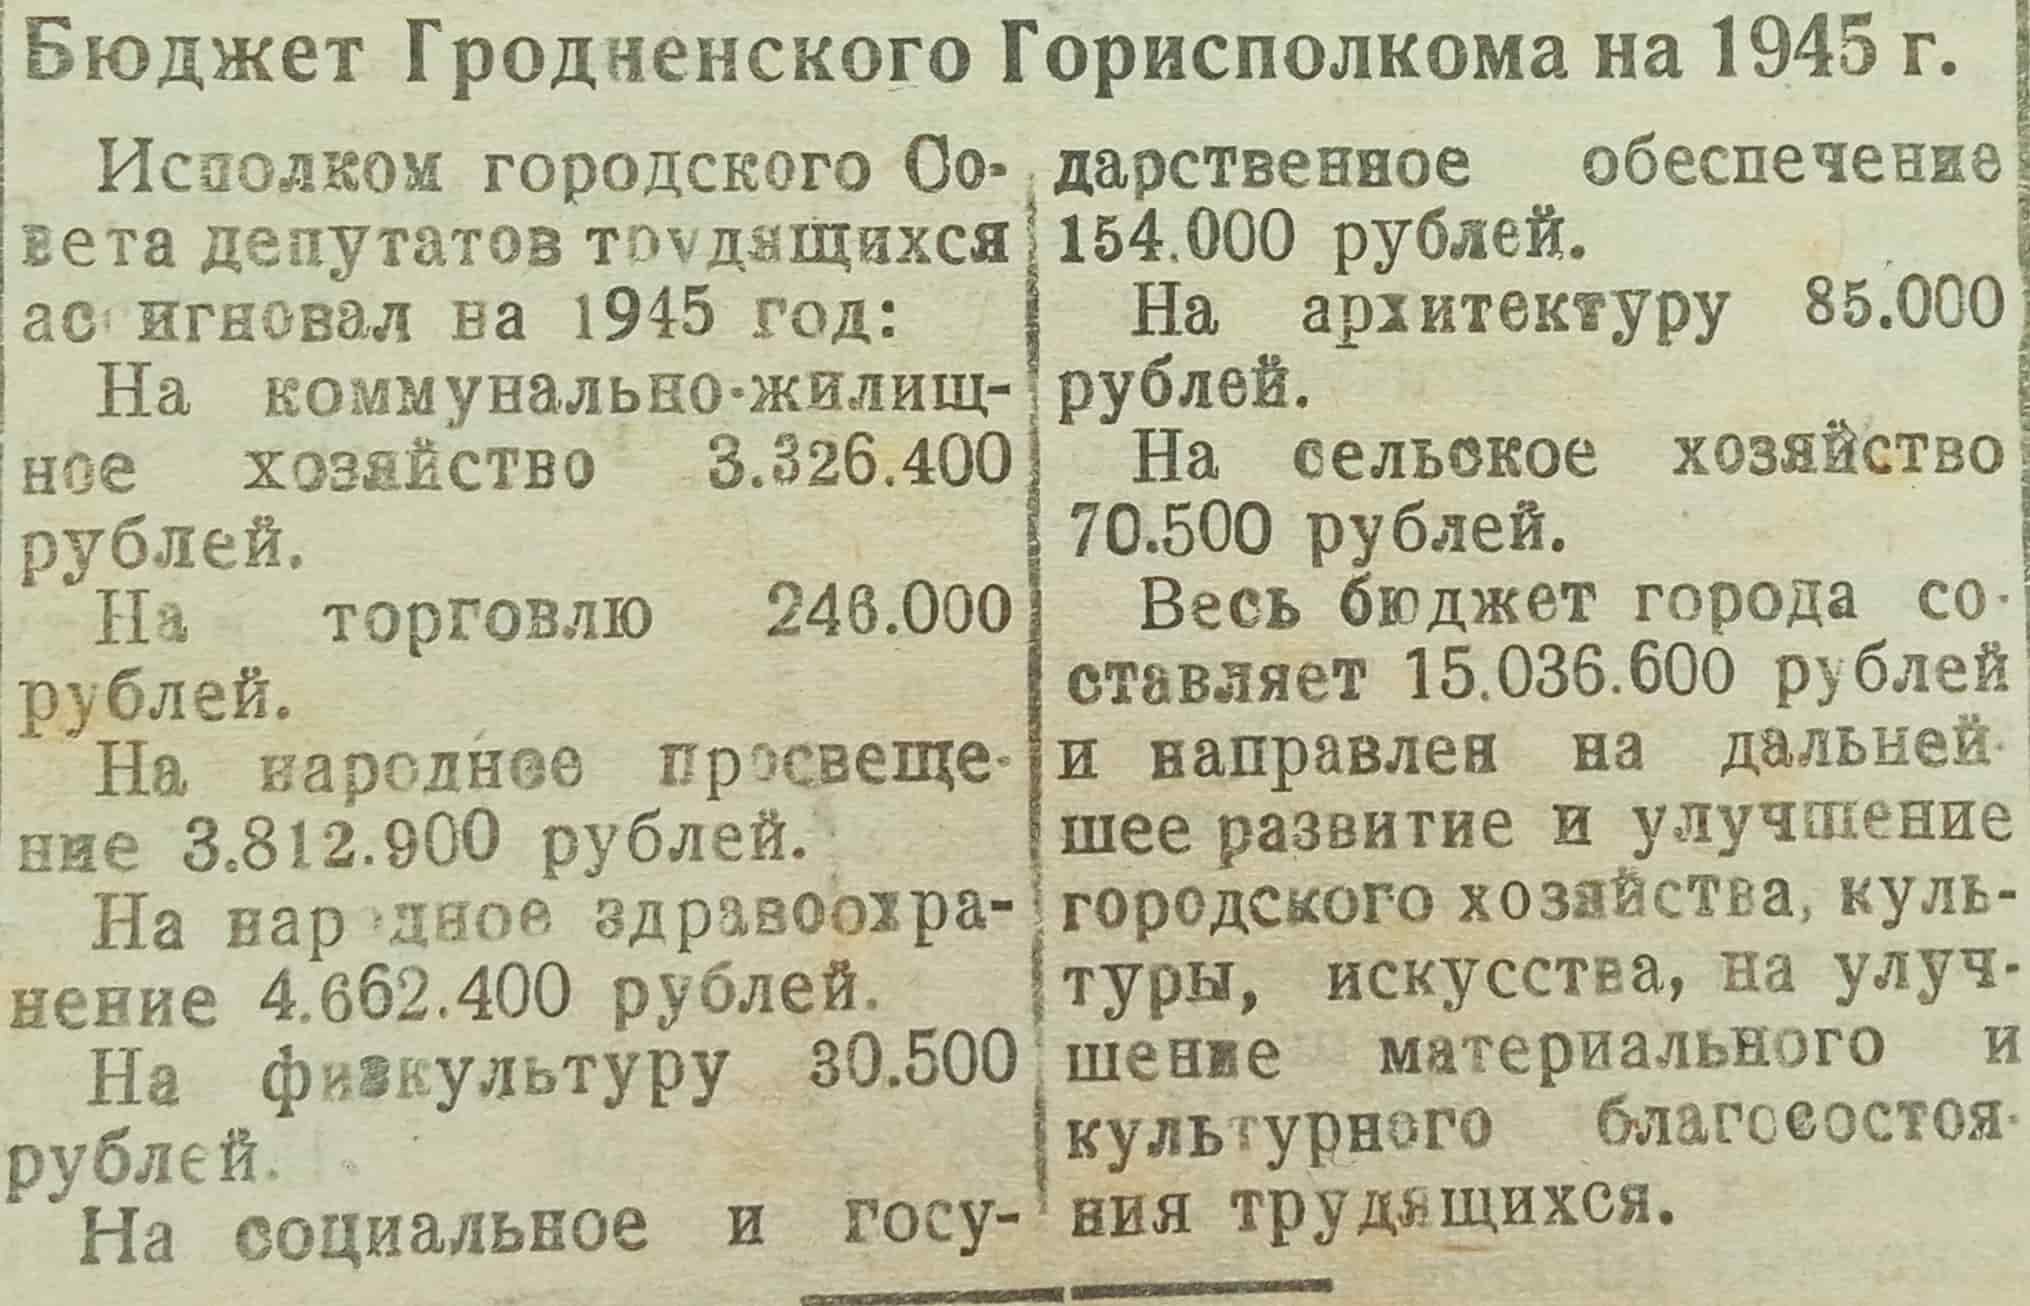 Бюджет Гродненского горисполкома на 1945 г. Газета «Гродненская правда». НСБ № 1190. 